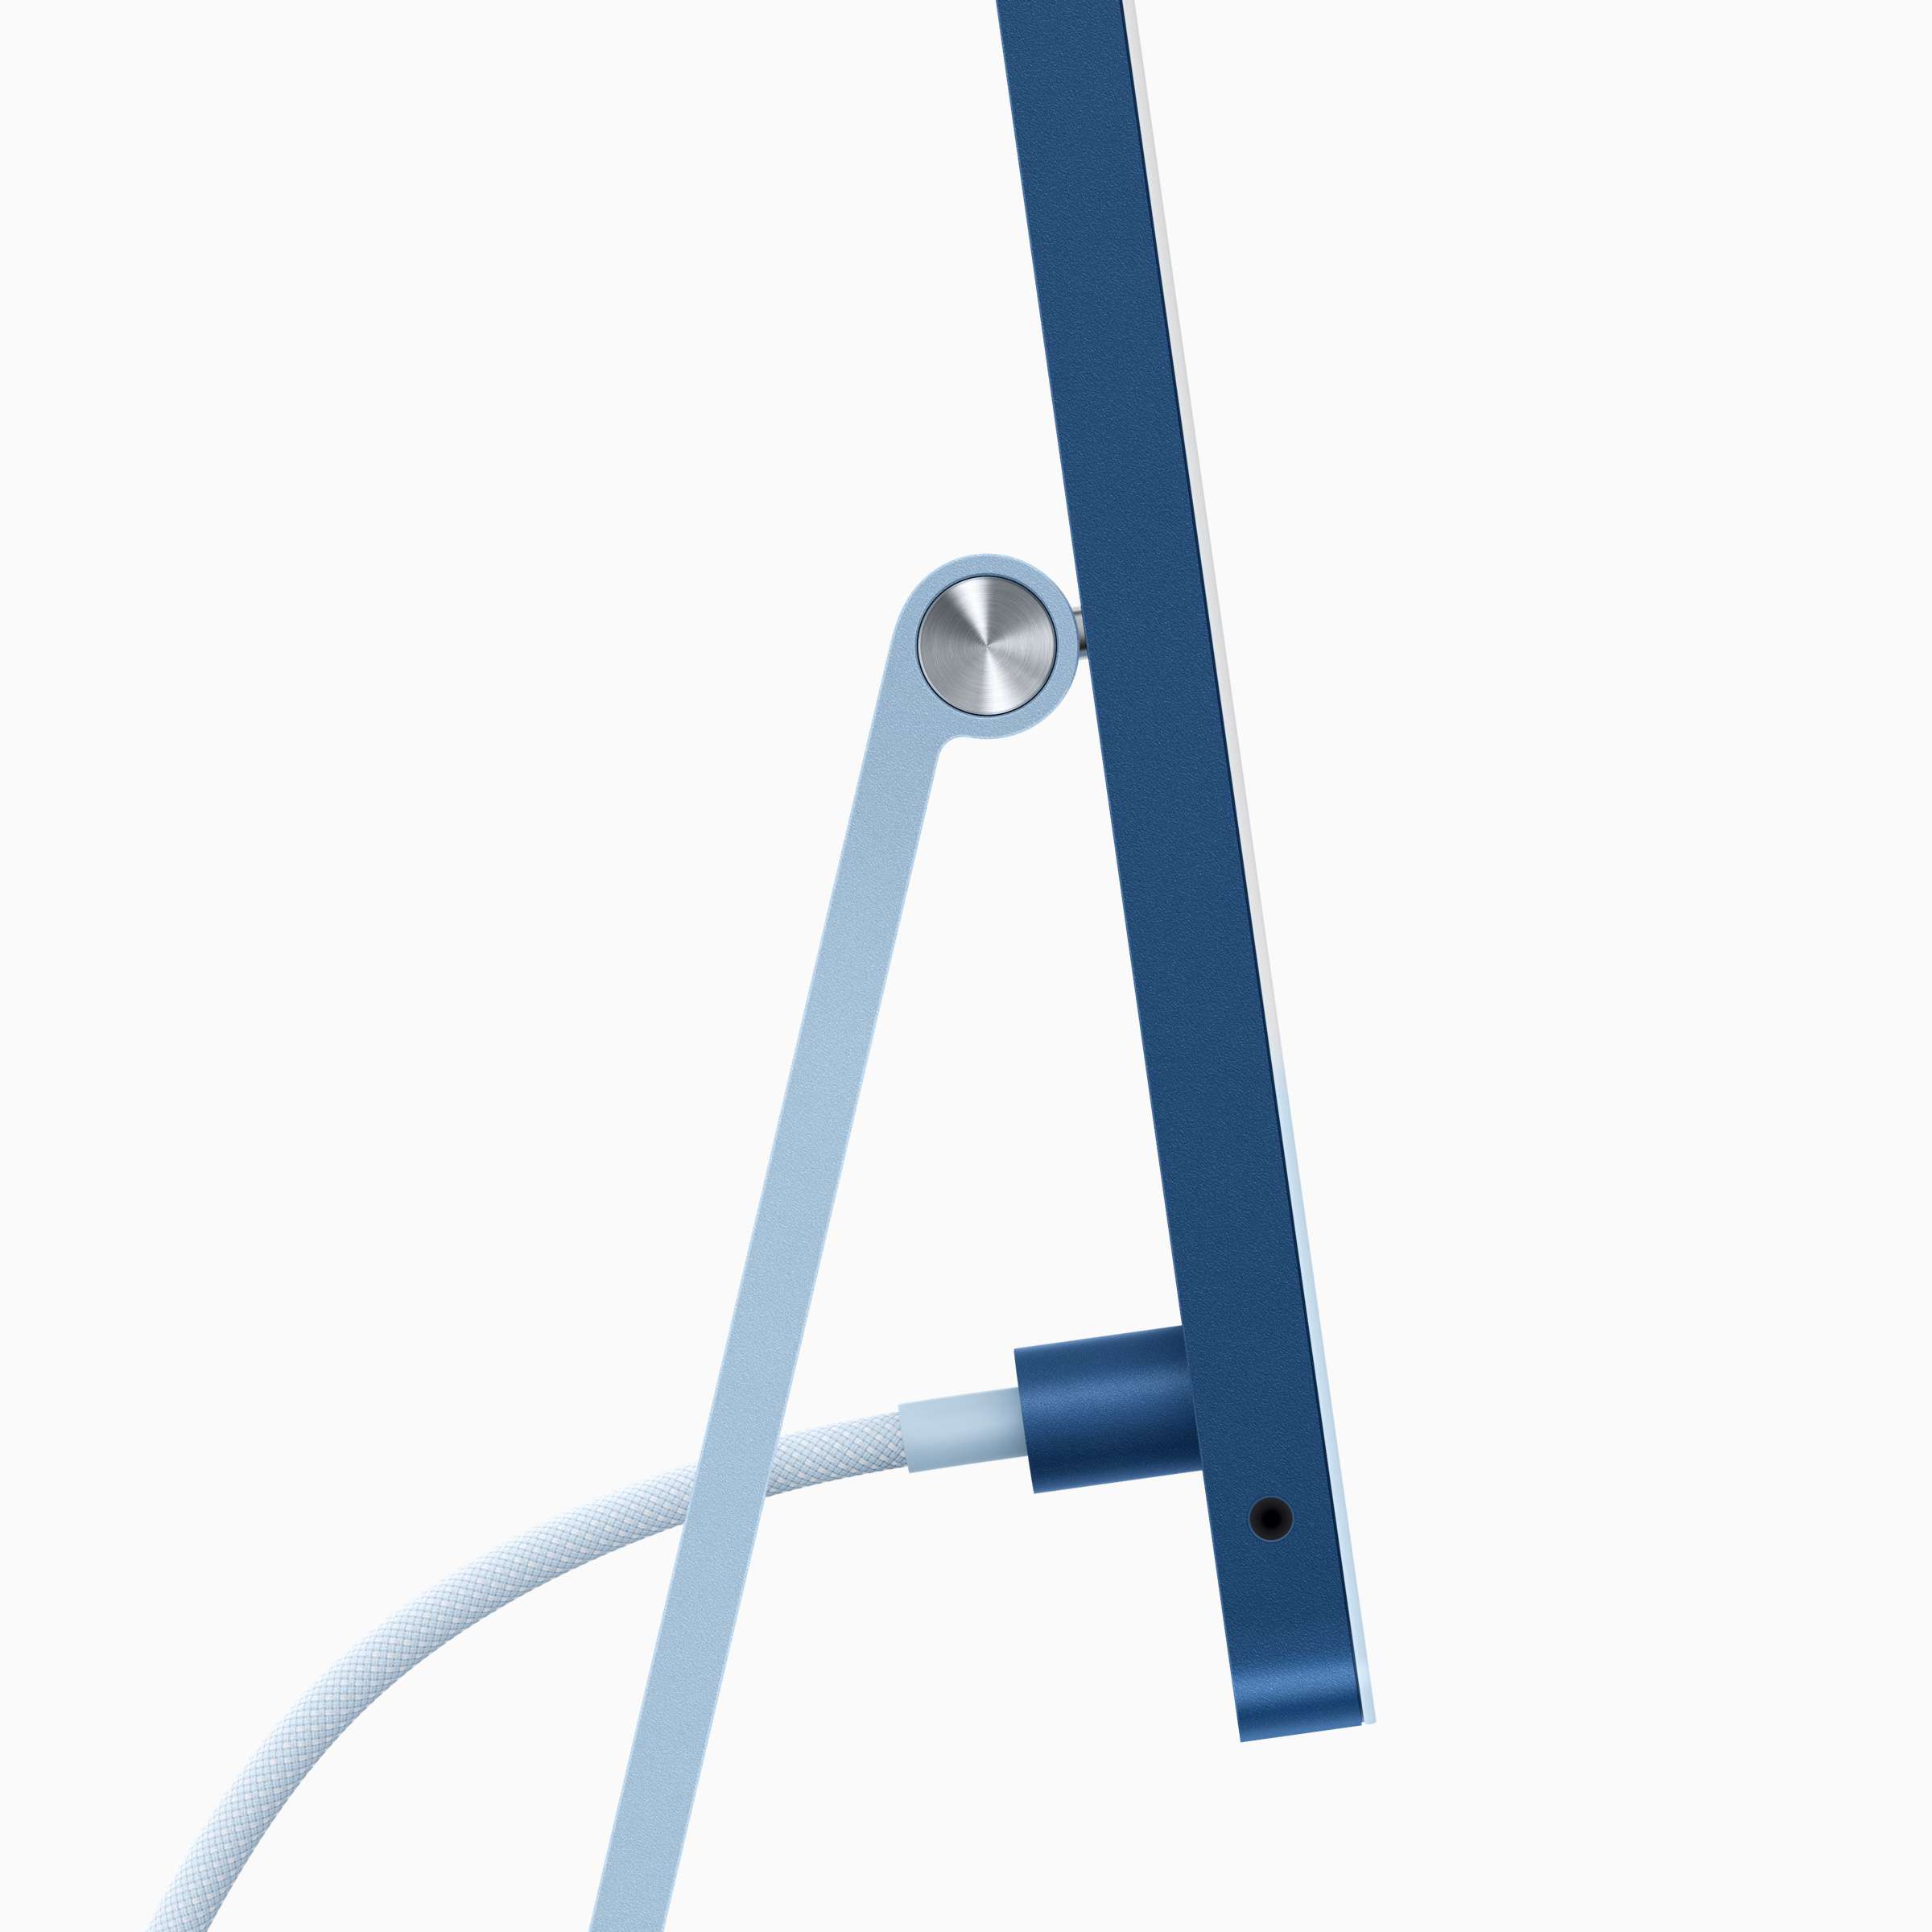 Boční pohled na nový iMac s magnetickým napájecím kabelem připojeným přes stojan.